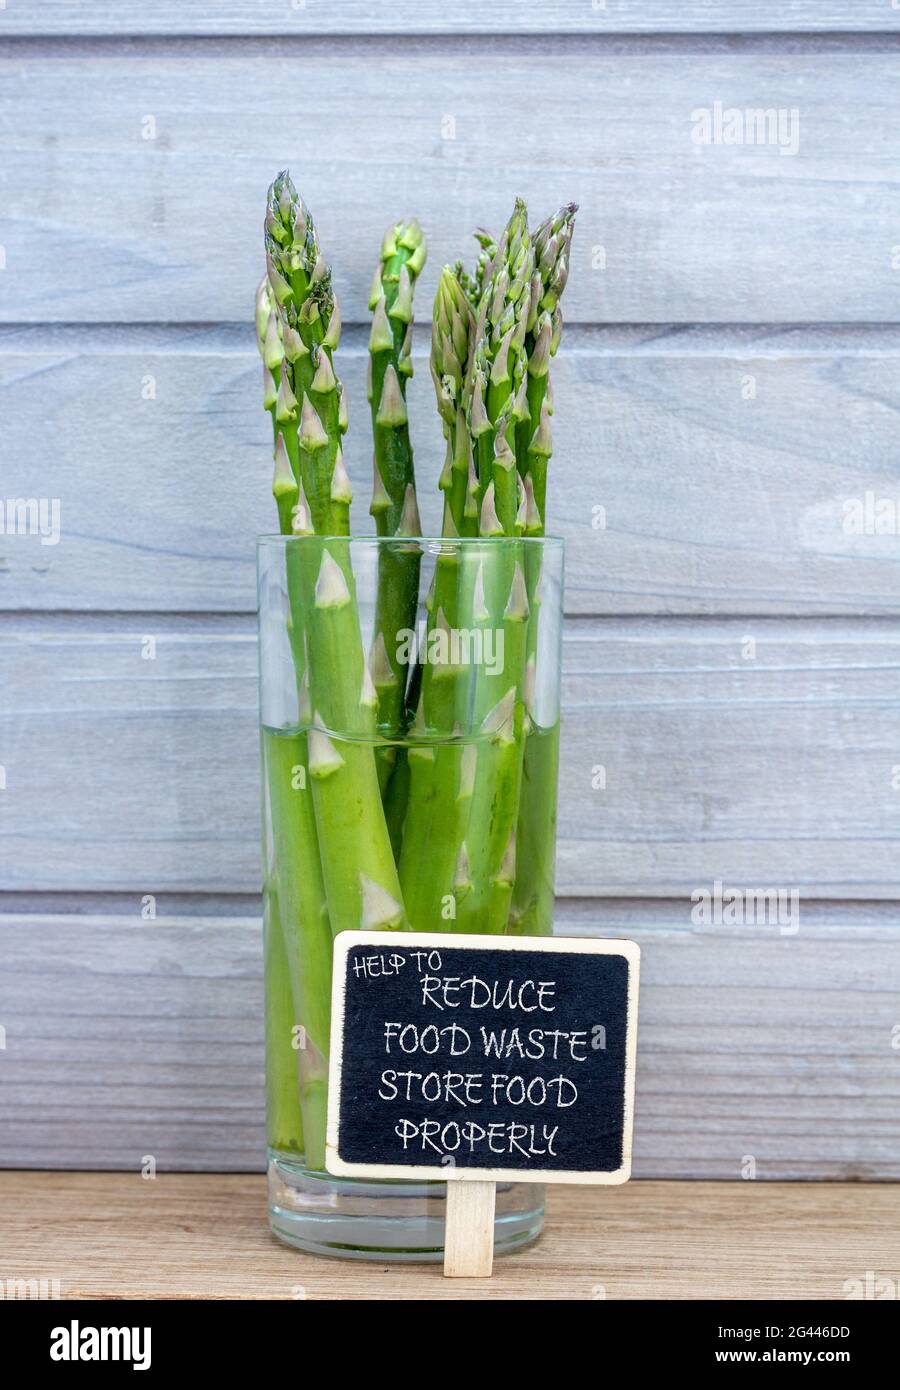 gli asparagi immagazzinati in acqua in vetro per conservarli più a lungo, contribuiscono a ridurre gli sprechi di cibo, immagazzinano gli alimenti correttamente il testo. Buon deposito di cibo per ridurre lo spreco domestico. Foto Stock